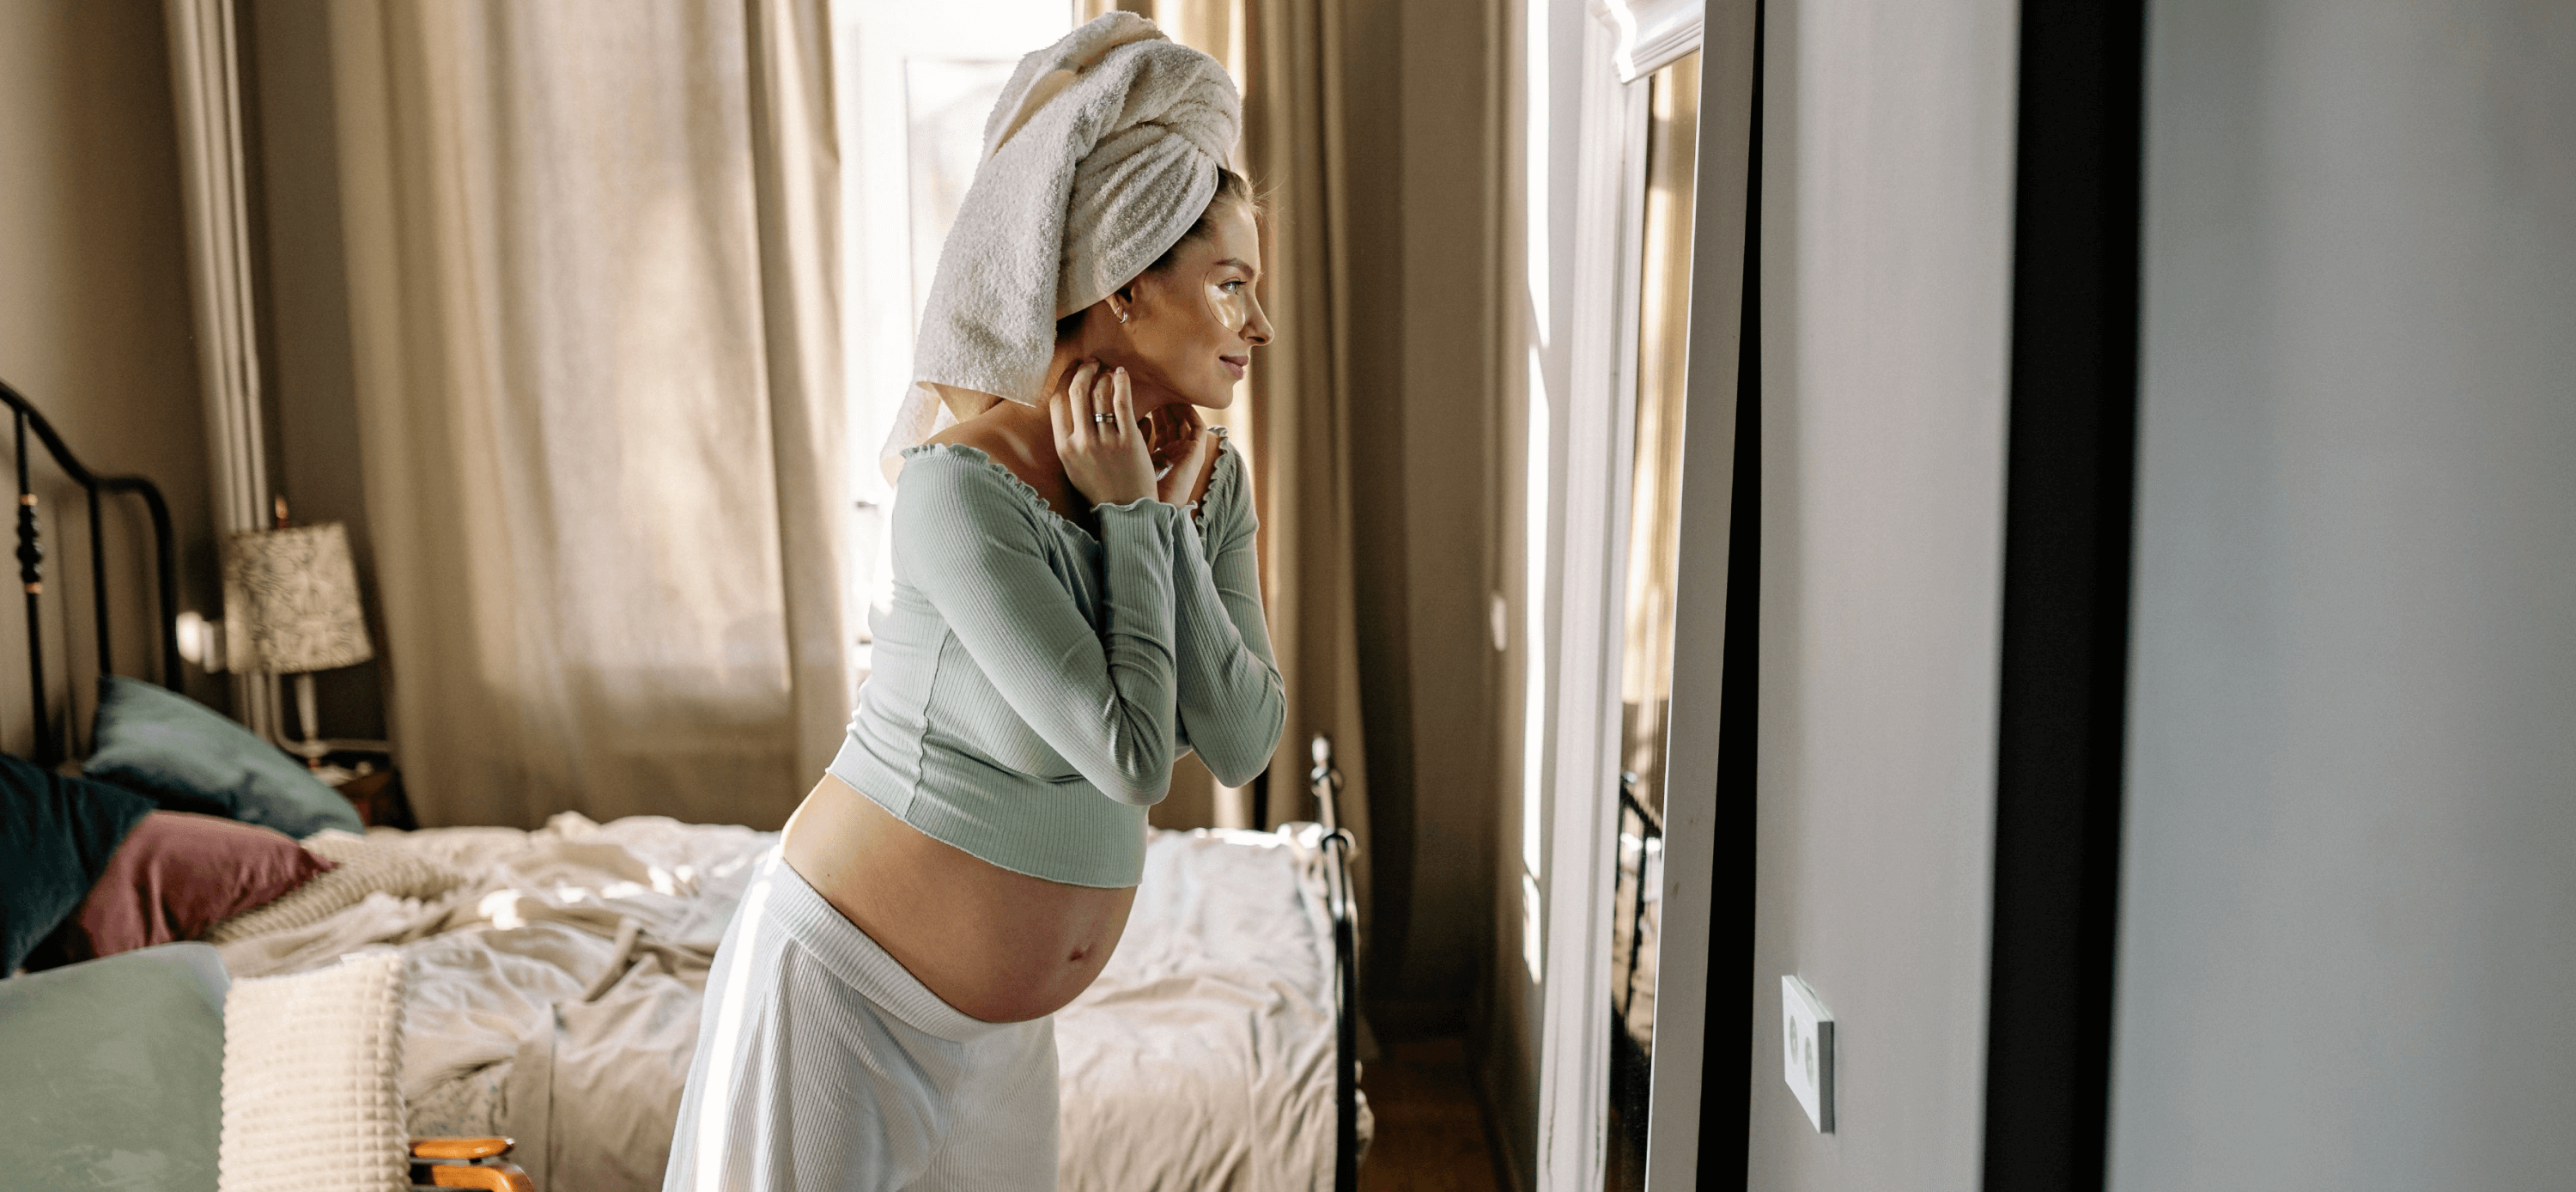 winter skincare routine for pregnancy